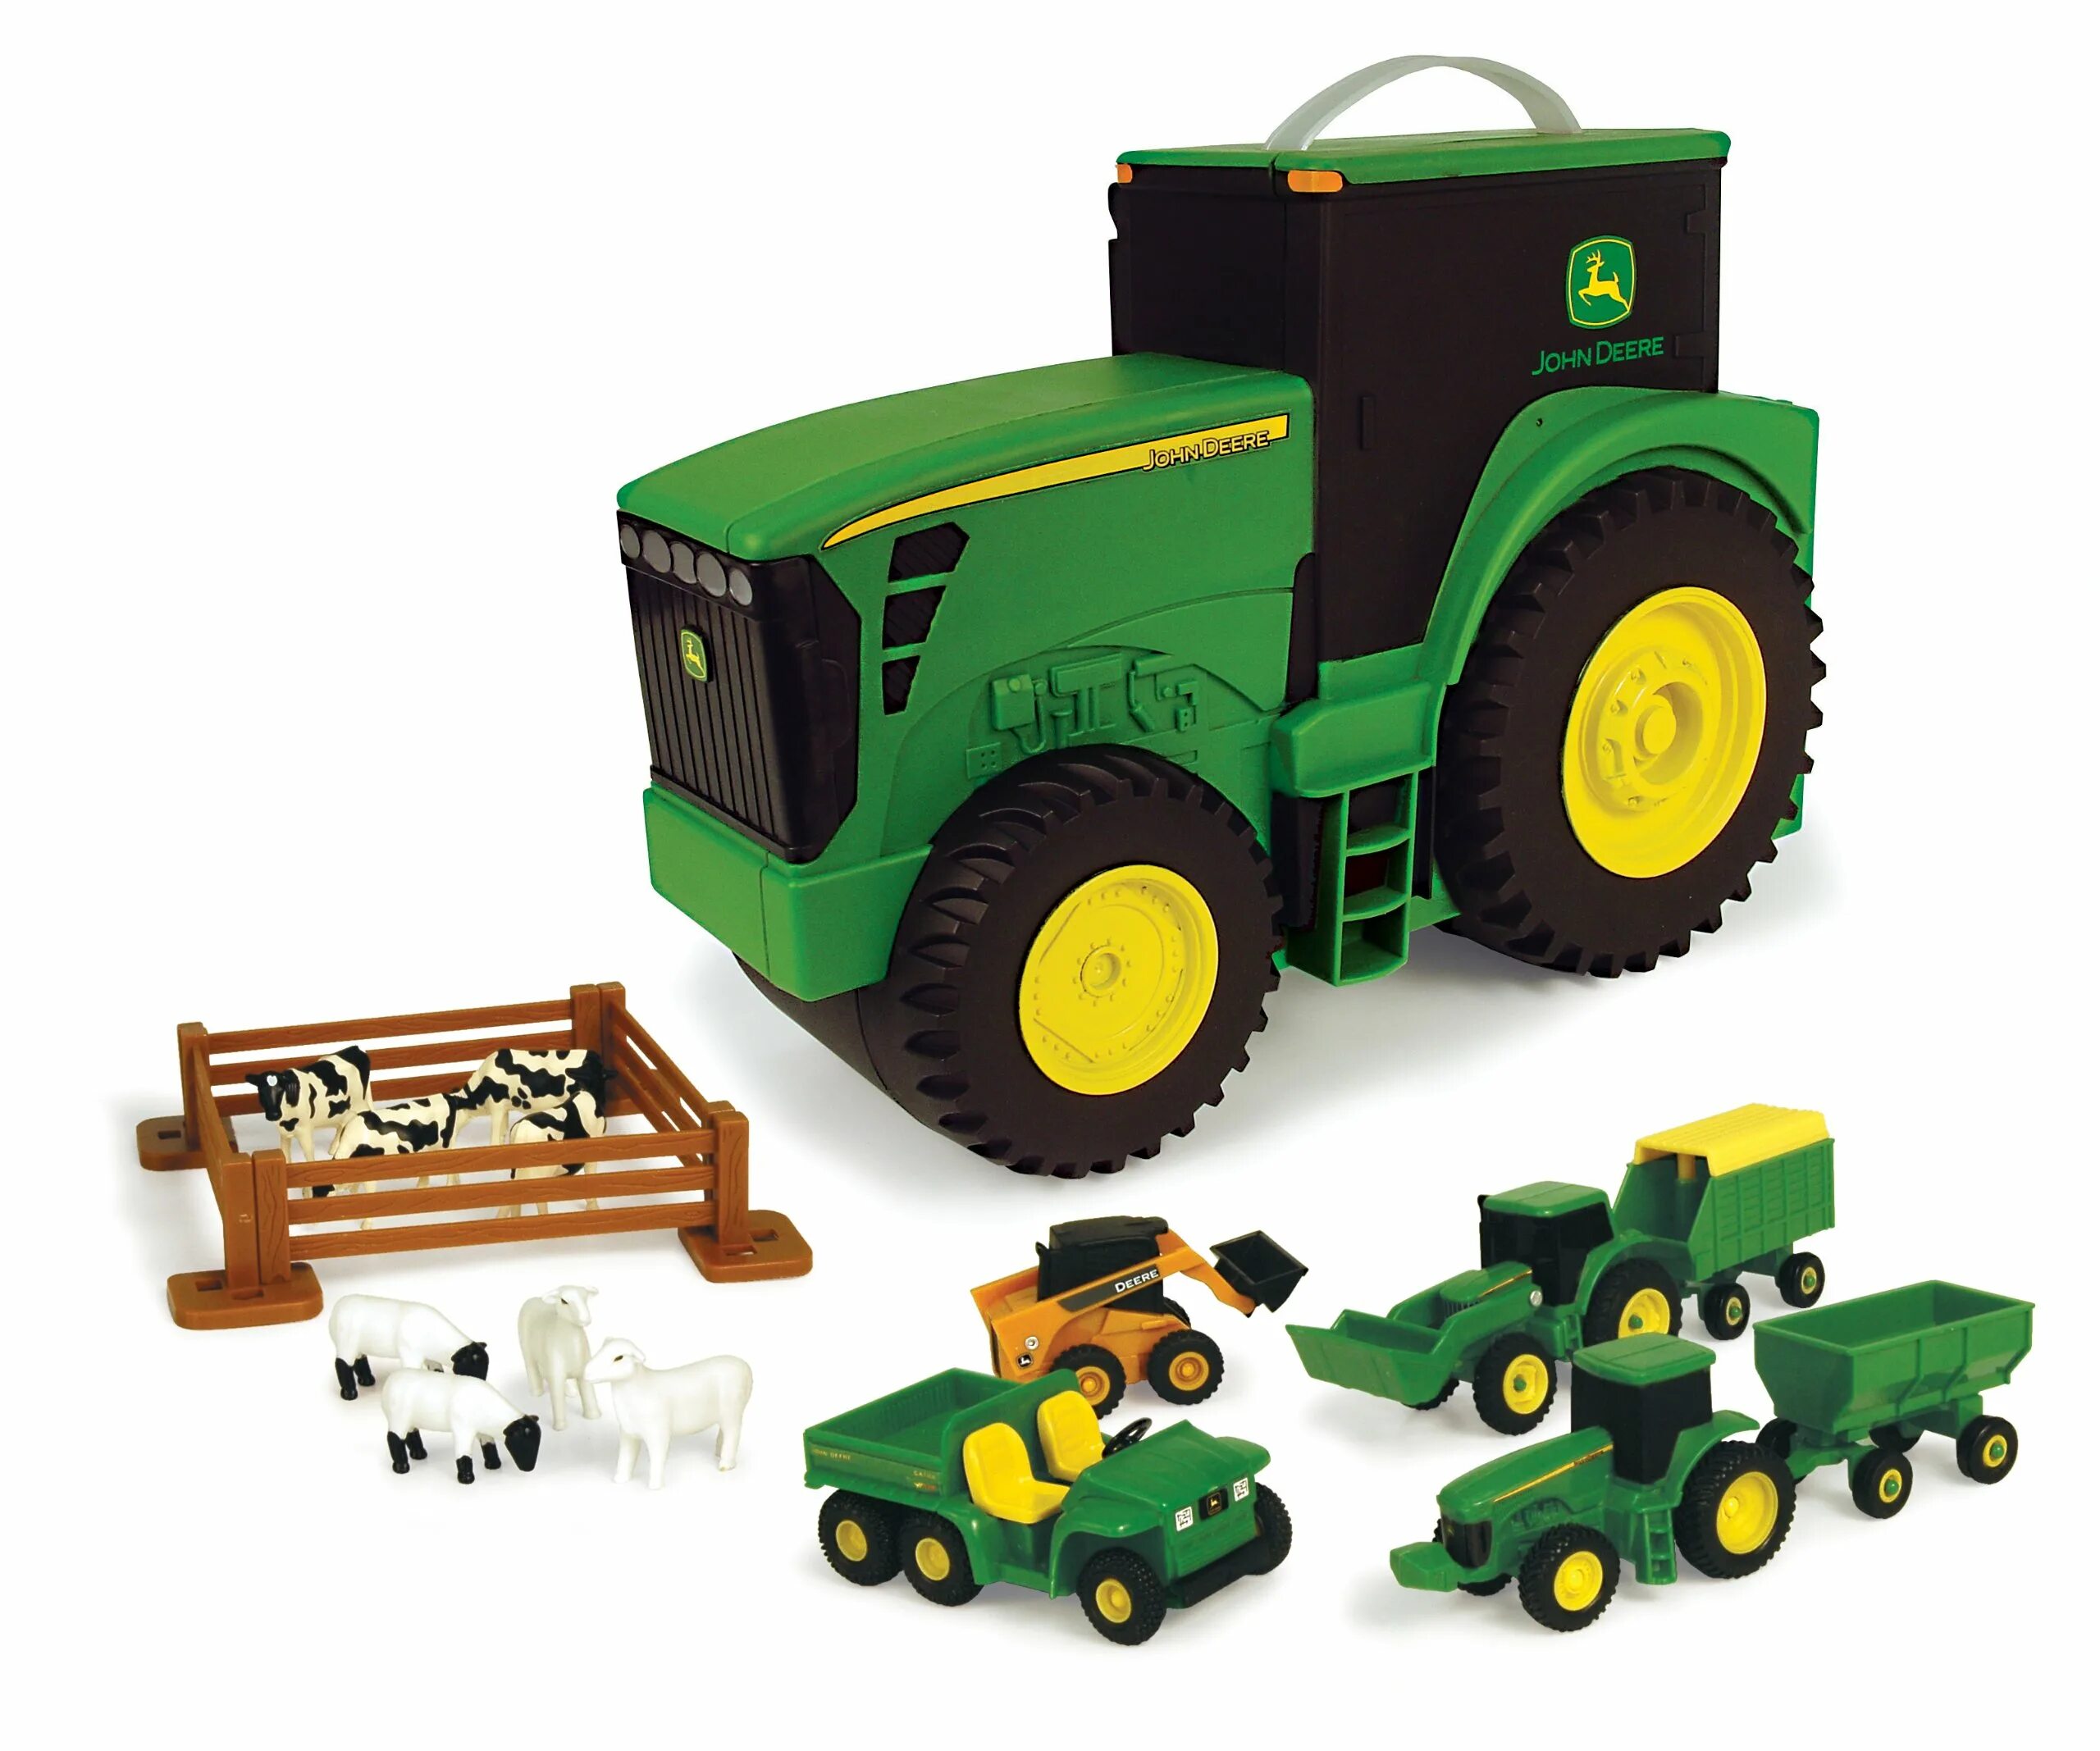 Игрушки Tomy John Deere. Трактор John Deere игрушечный Tomy. John Deere трактор игрушка. Трактор Джон Дир игрушка Томи.